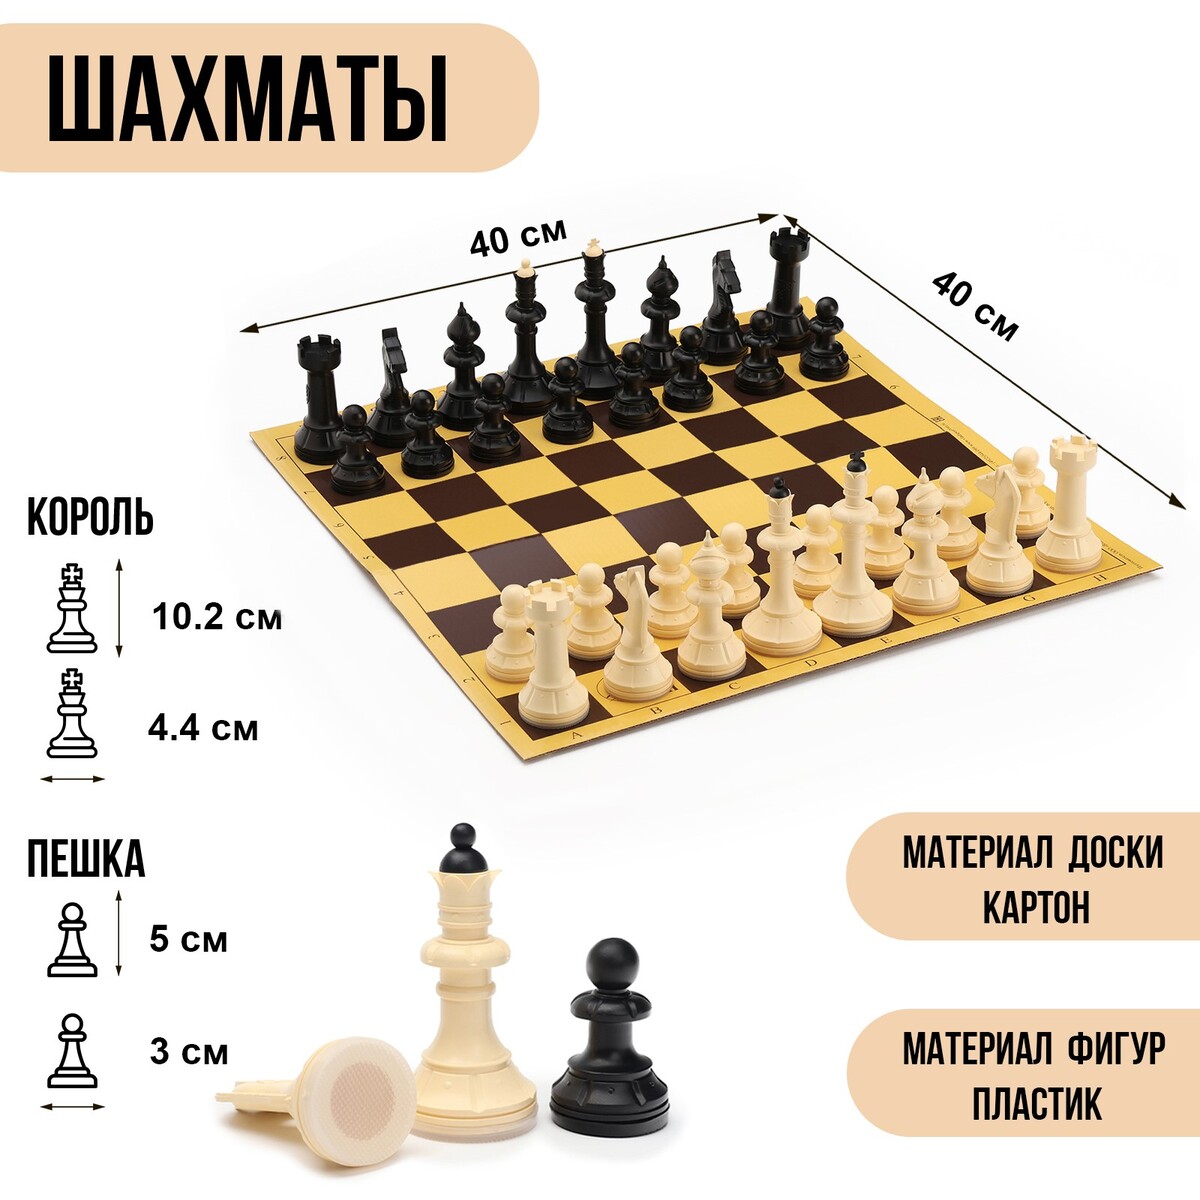 Шахматы 40х40 см шахматы гроссмейстерские турнирные 43 х 43 см фигуры пластик король 10 5 см пешка 5 см